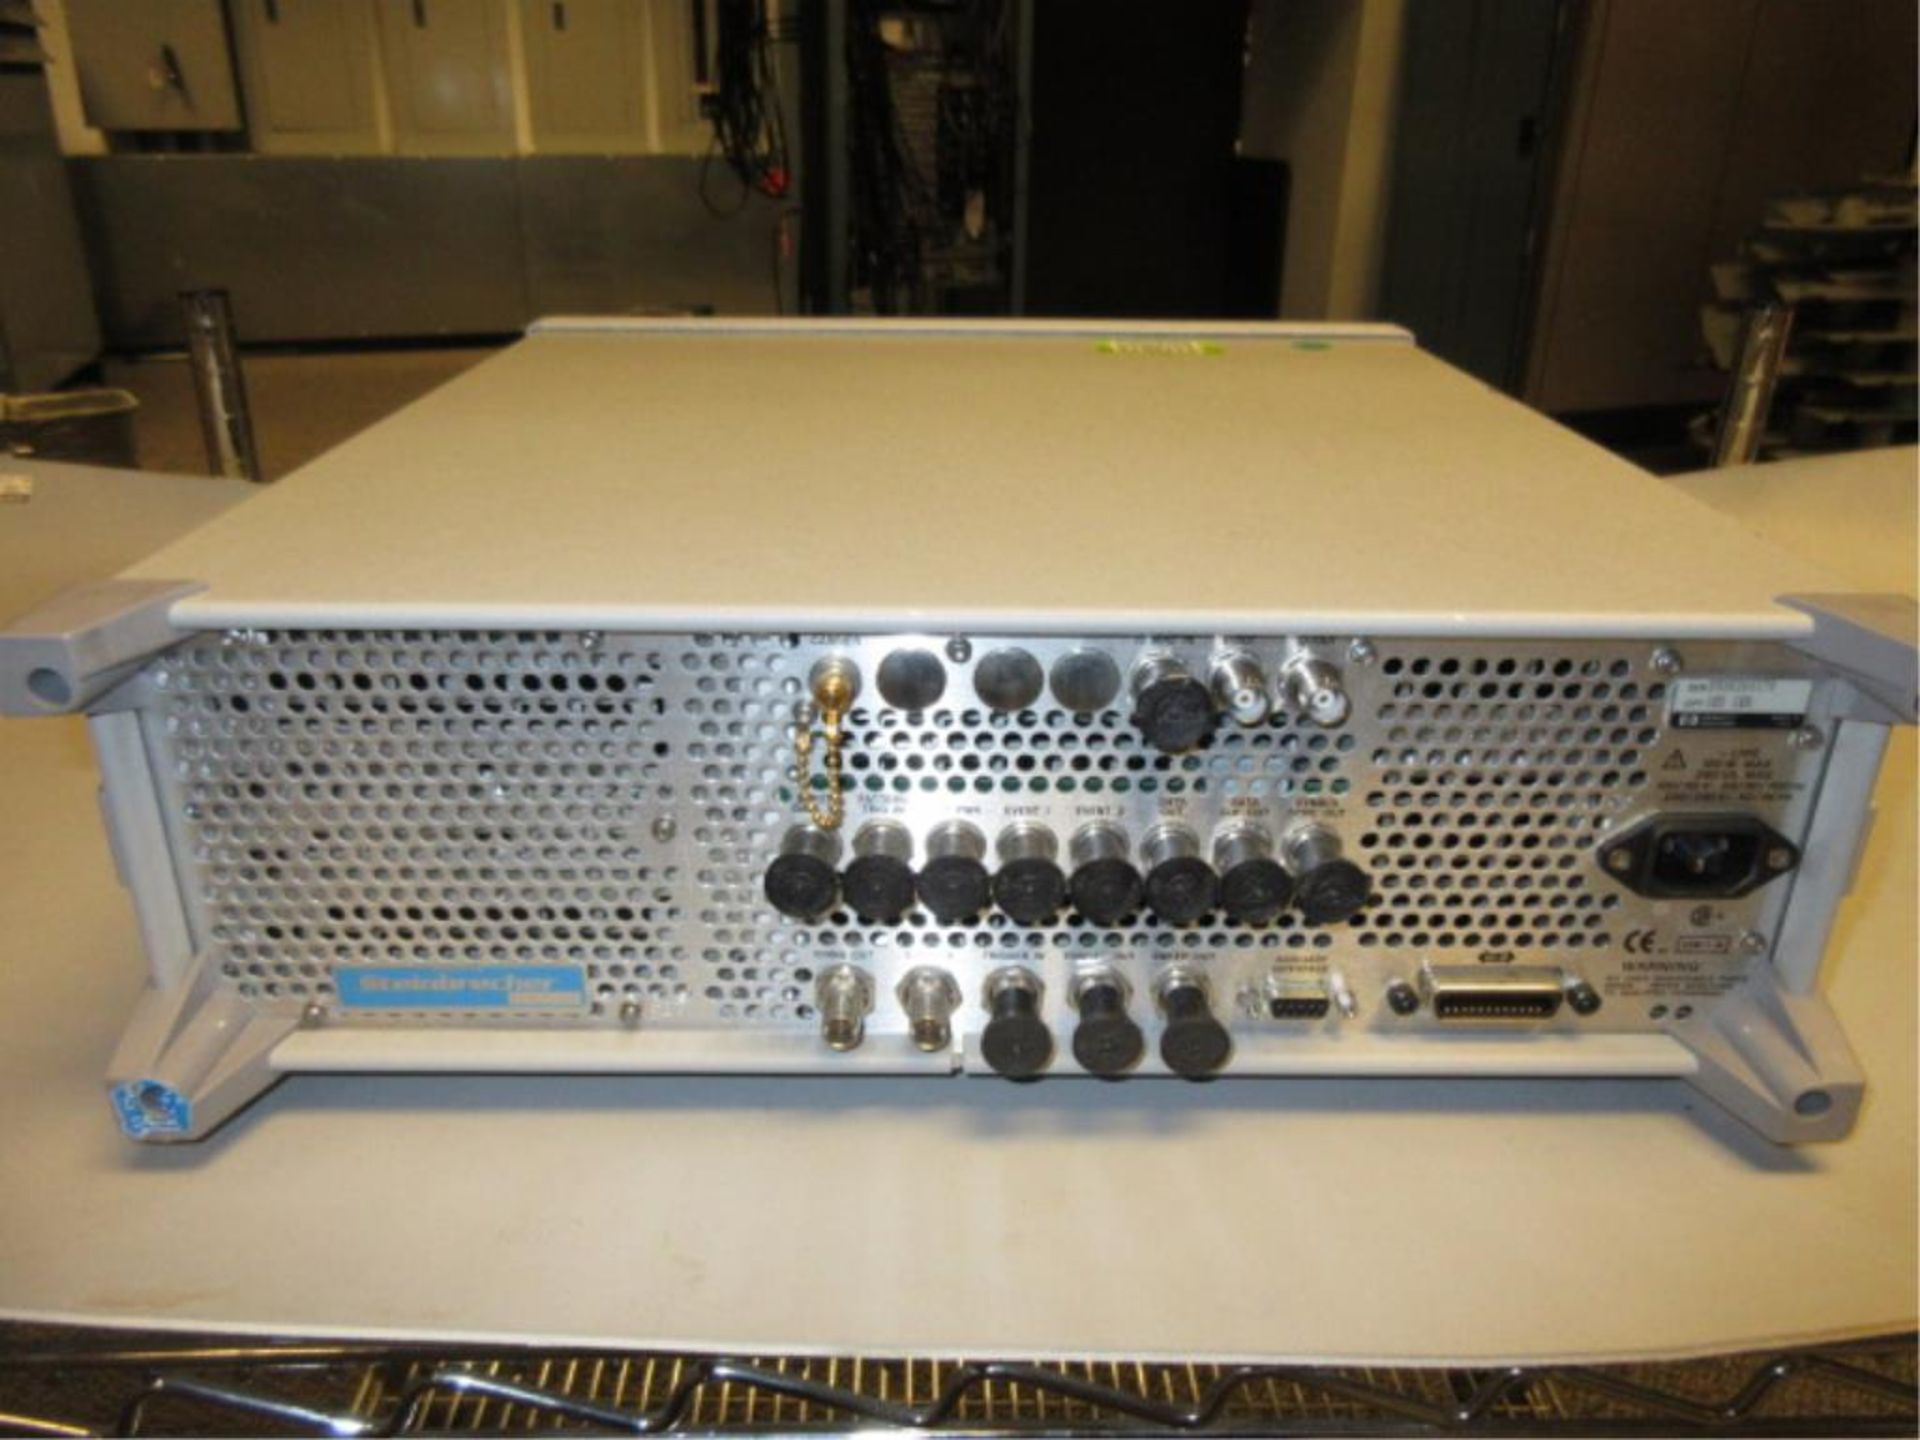 Hewlett Packard ESG-D3000A Digital Signal Generator. Digital Signal Generator, 250 kHz - 3000 MHz, - Image 3 of 3